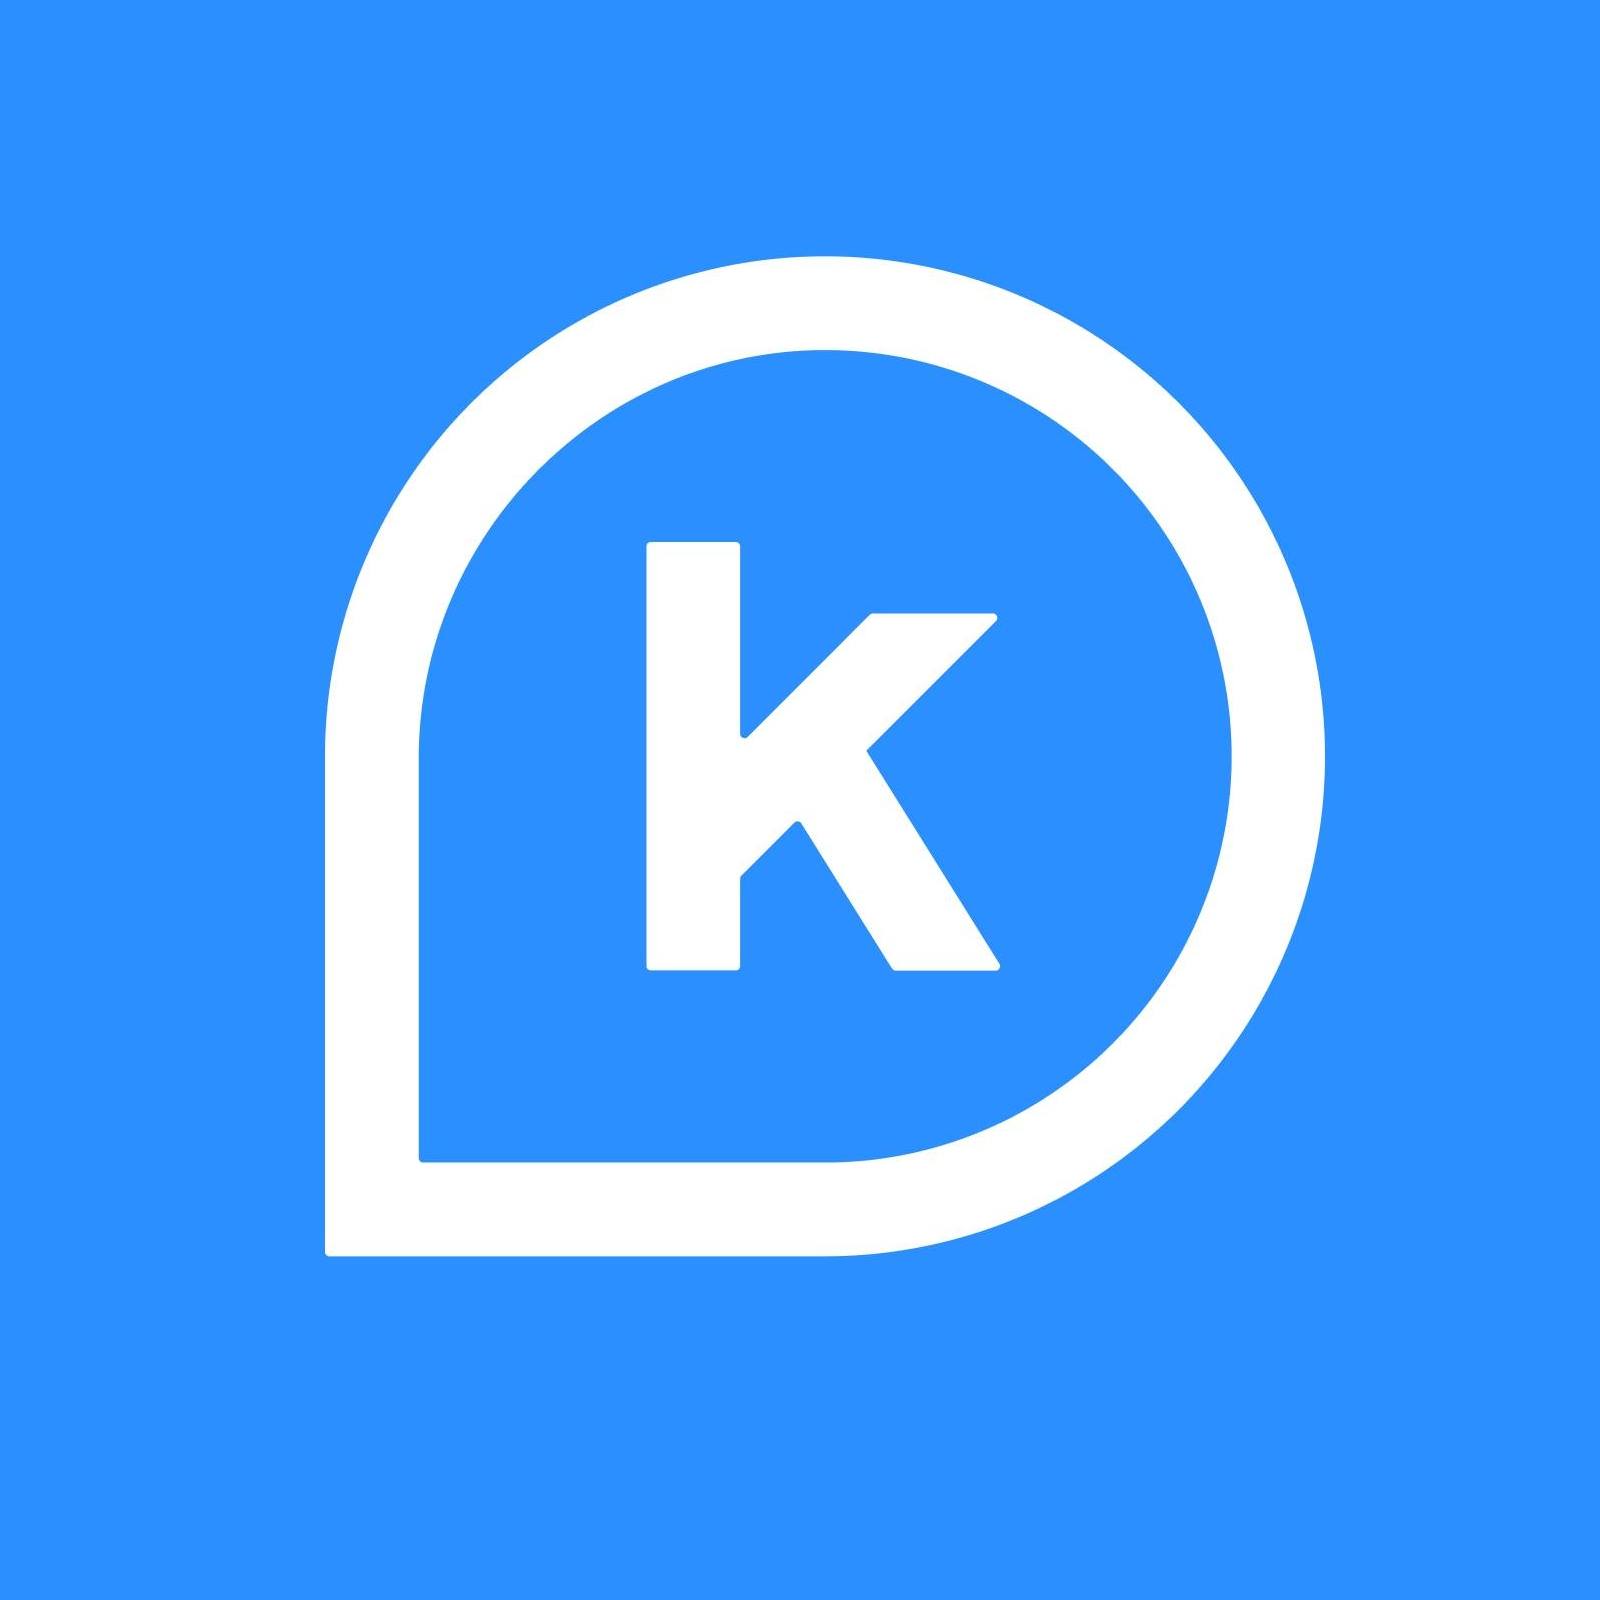 K Health logo